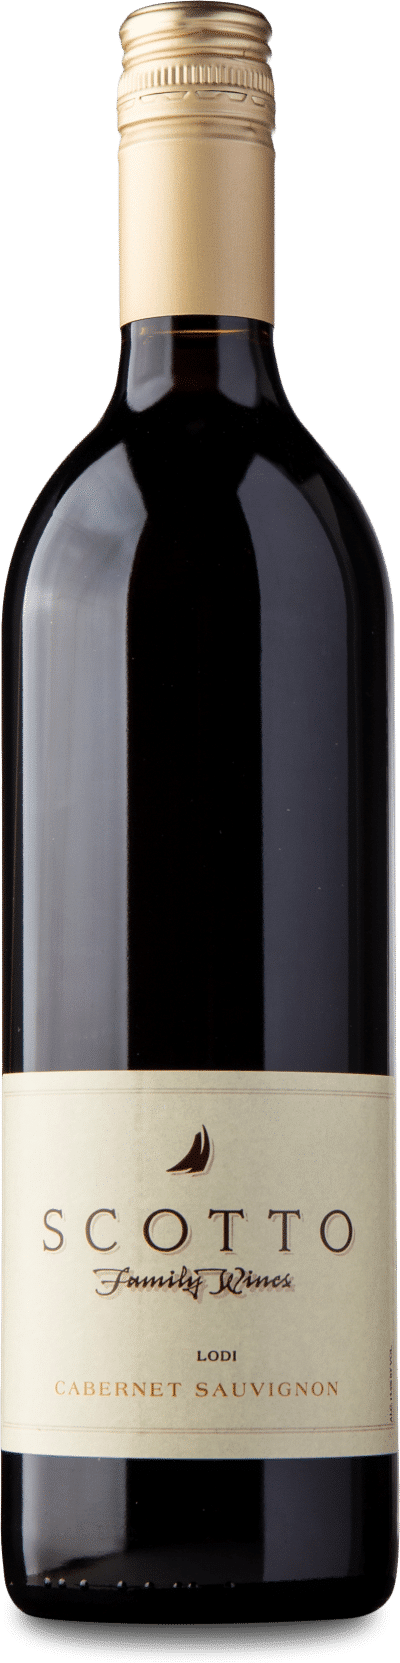 Scotto Family Wines - Cabernet Sauvignon